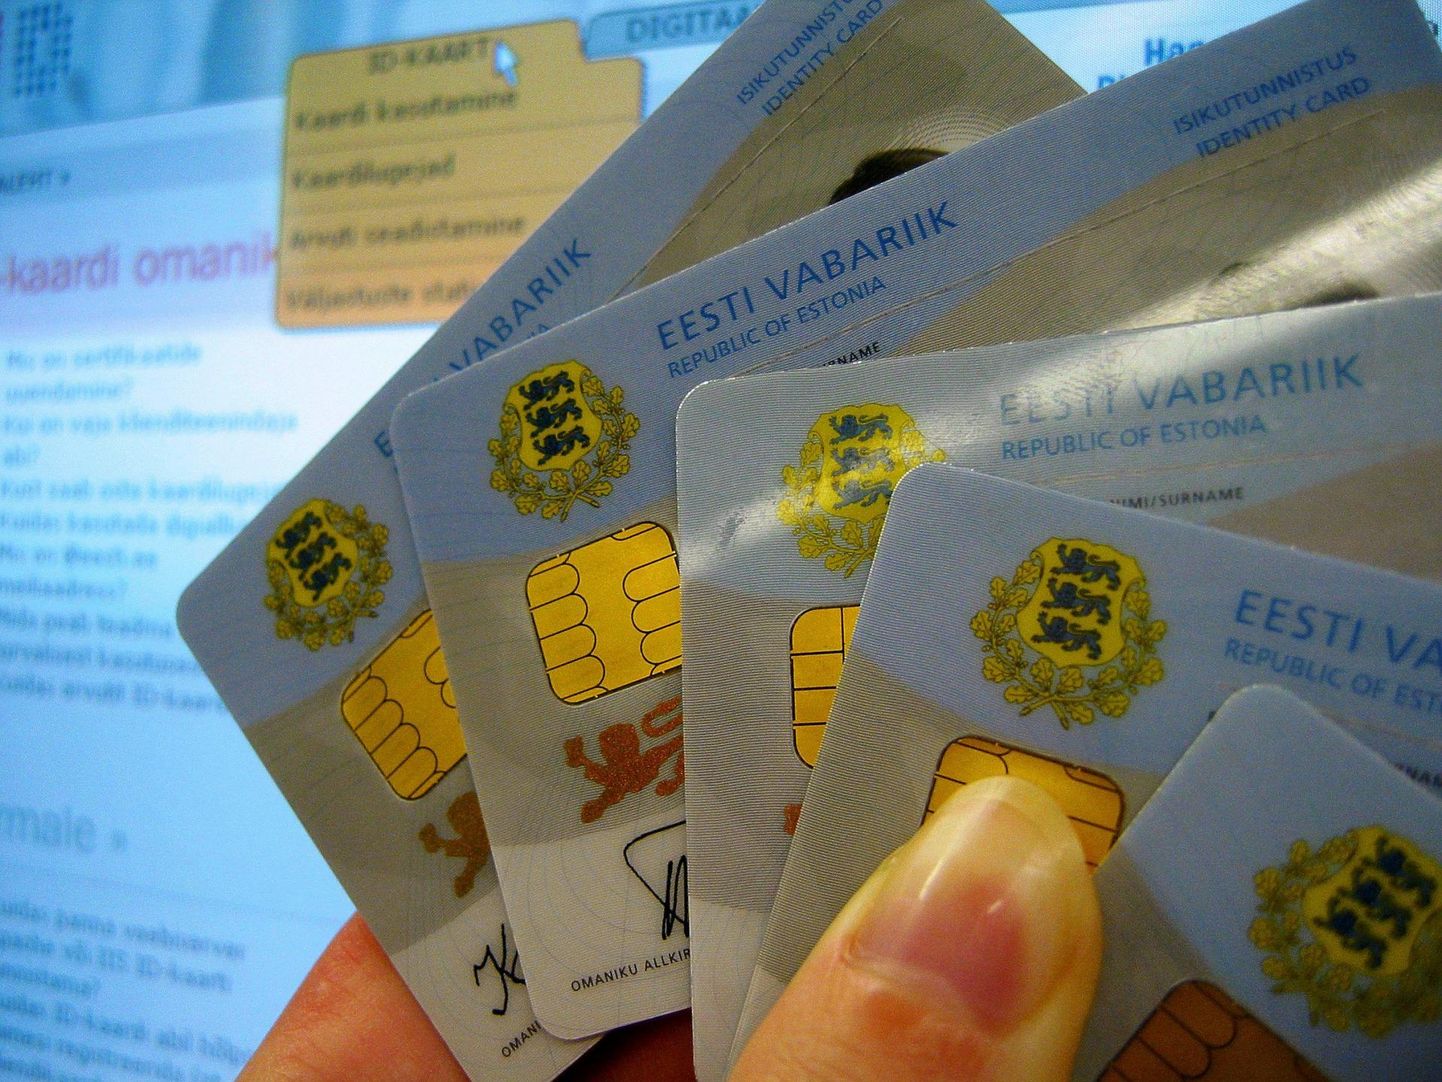 Juulist hakkab ID-kaardi kasutajatuge pakkuma aktsiaselts Tieto Estonia, millega seoses on abiliinil uus number. Foto on illustratiivne.